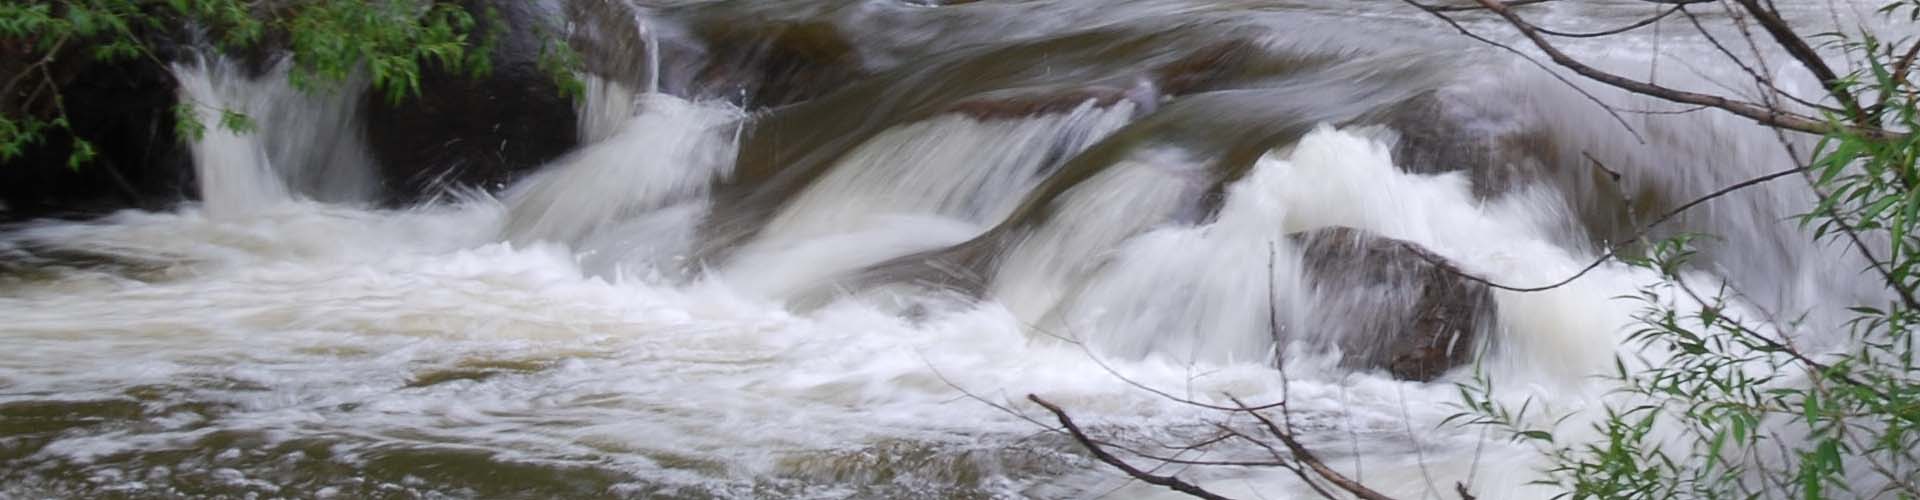 Boulder Creek high runoff